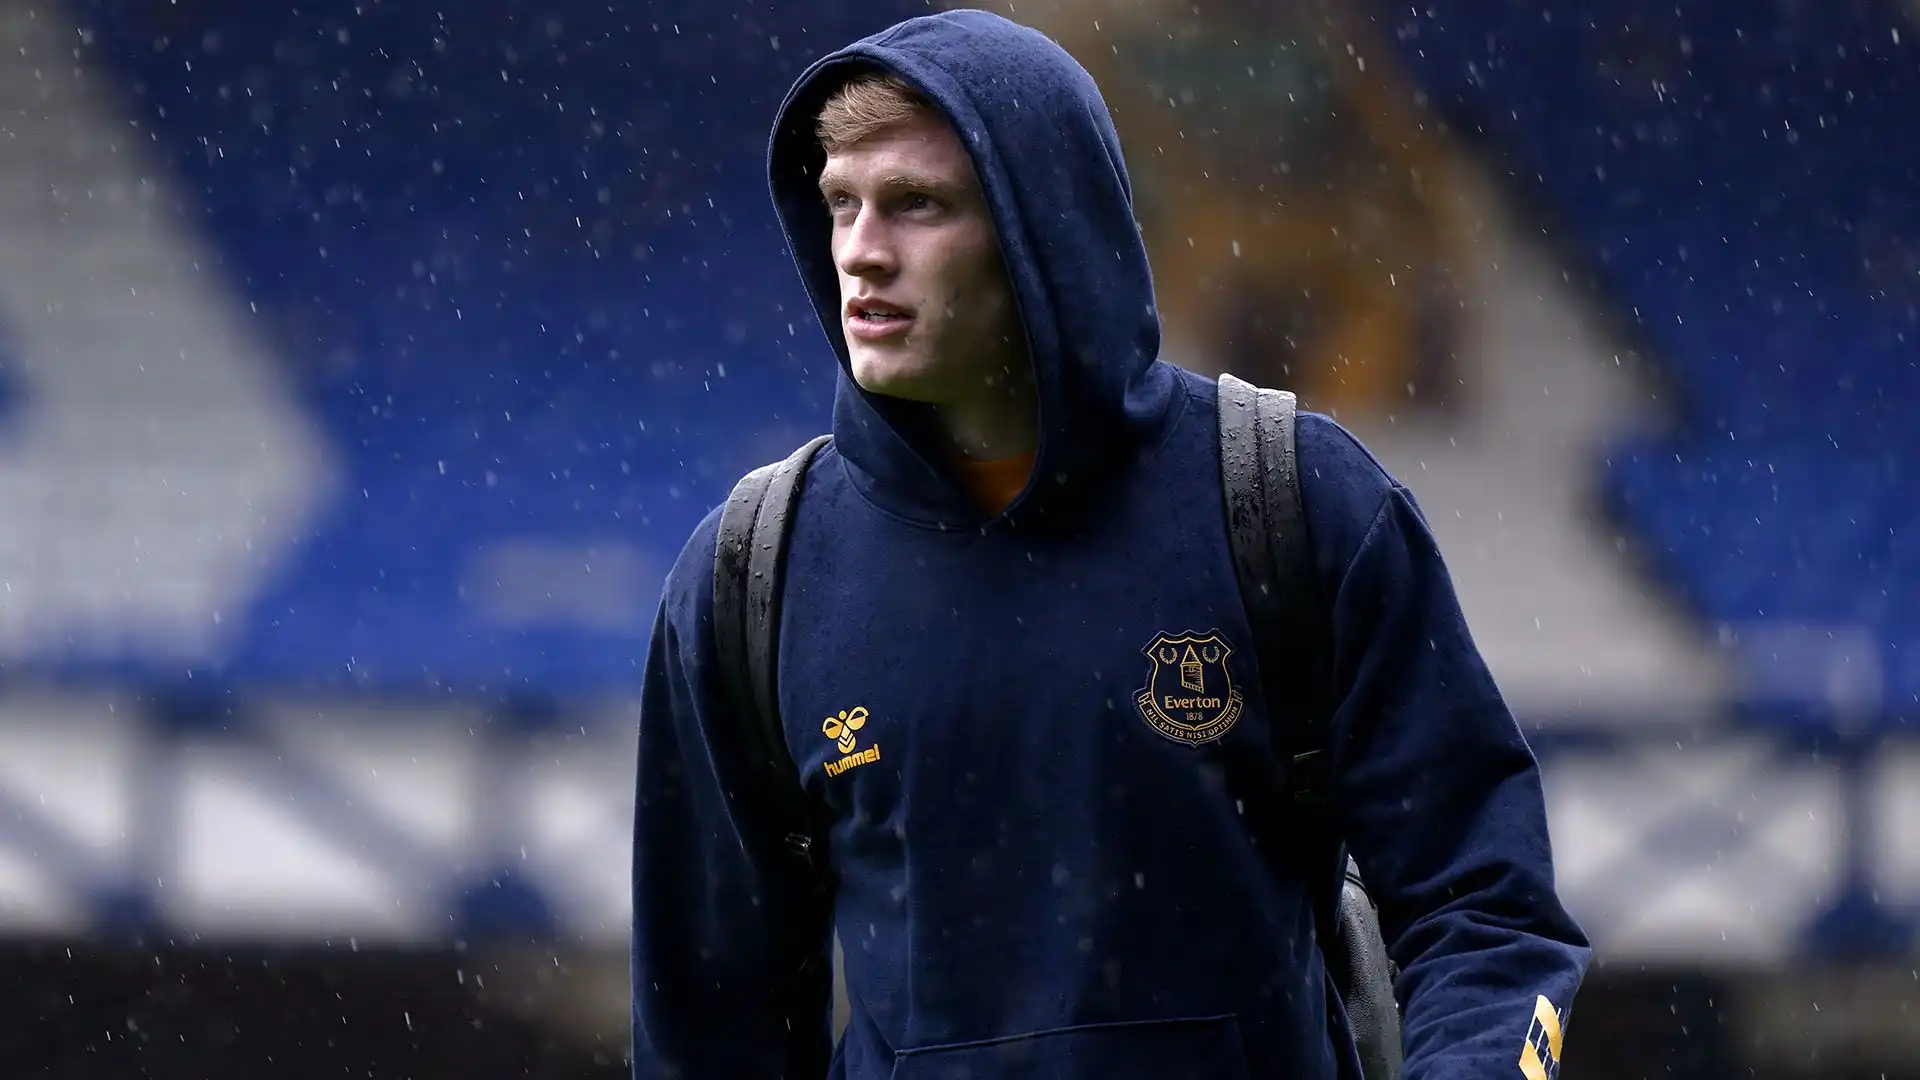 Il difensore inglese ha 21 anni ed è titolare indiscusso dell'Everton FC